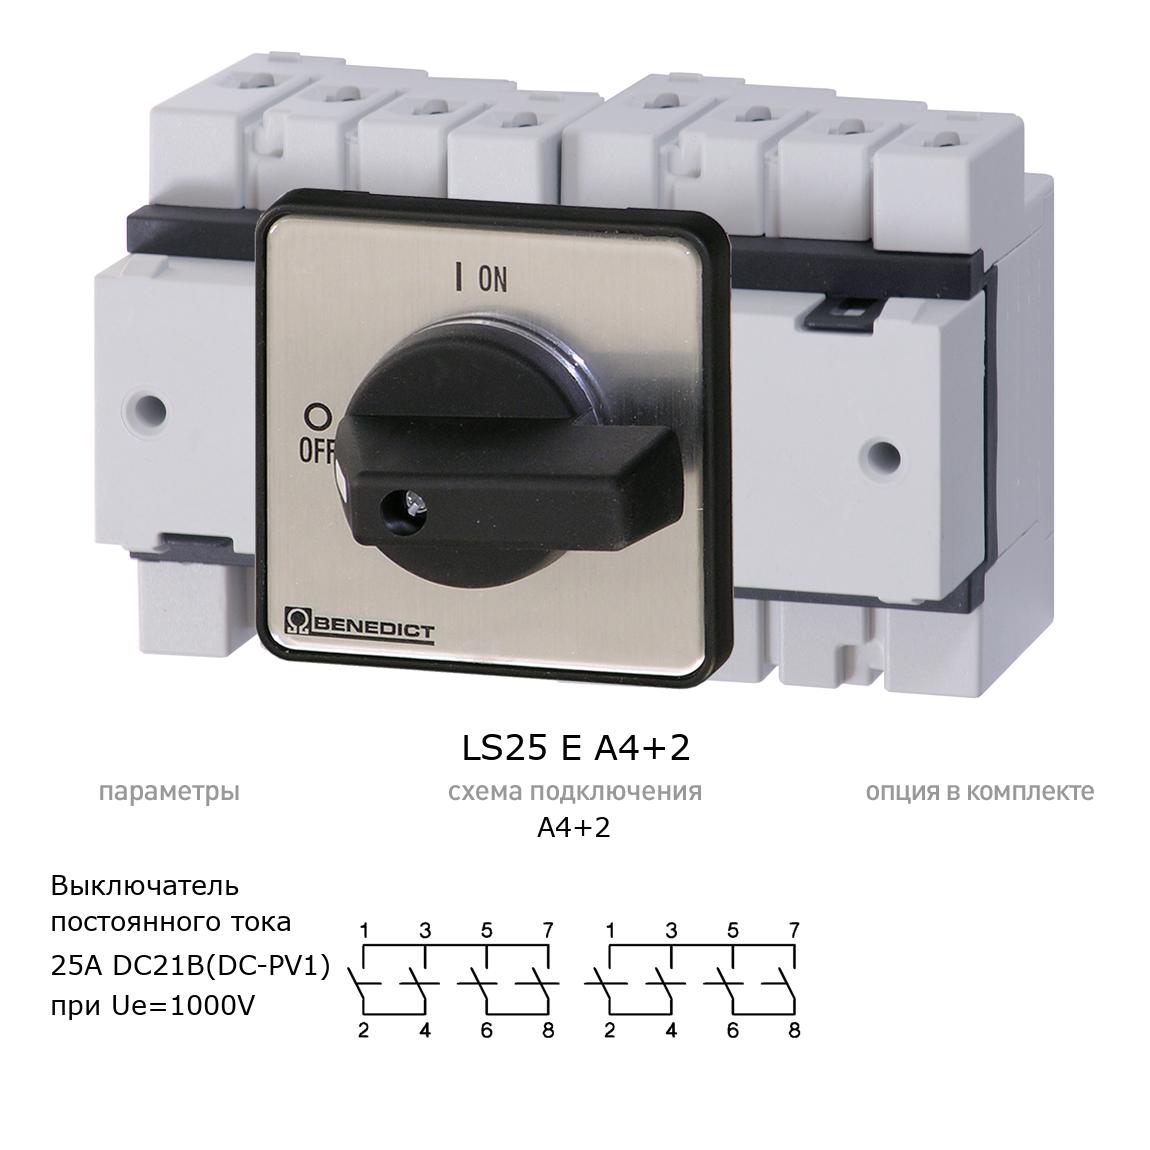 Кулачковый переключатель для постоянного тока (DC) LS25 E A4+2 BENEDICT